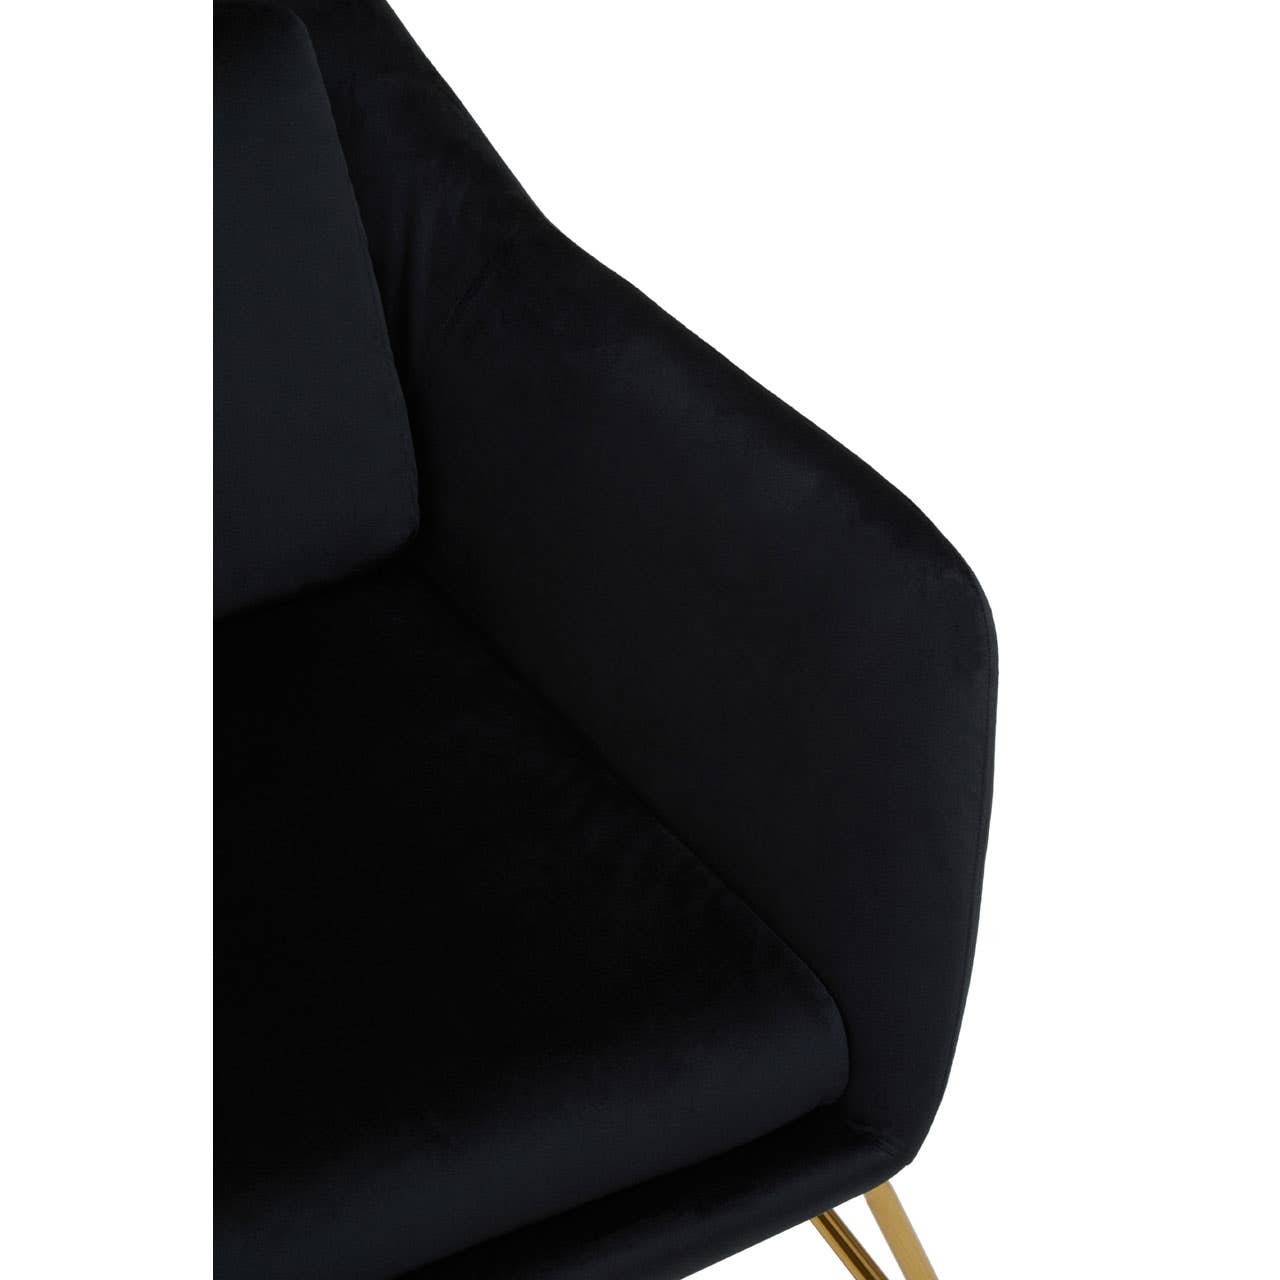 Noosa & Co. Living Stockholm Black Velvet Armchair House of Isabella UK